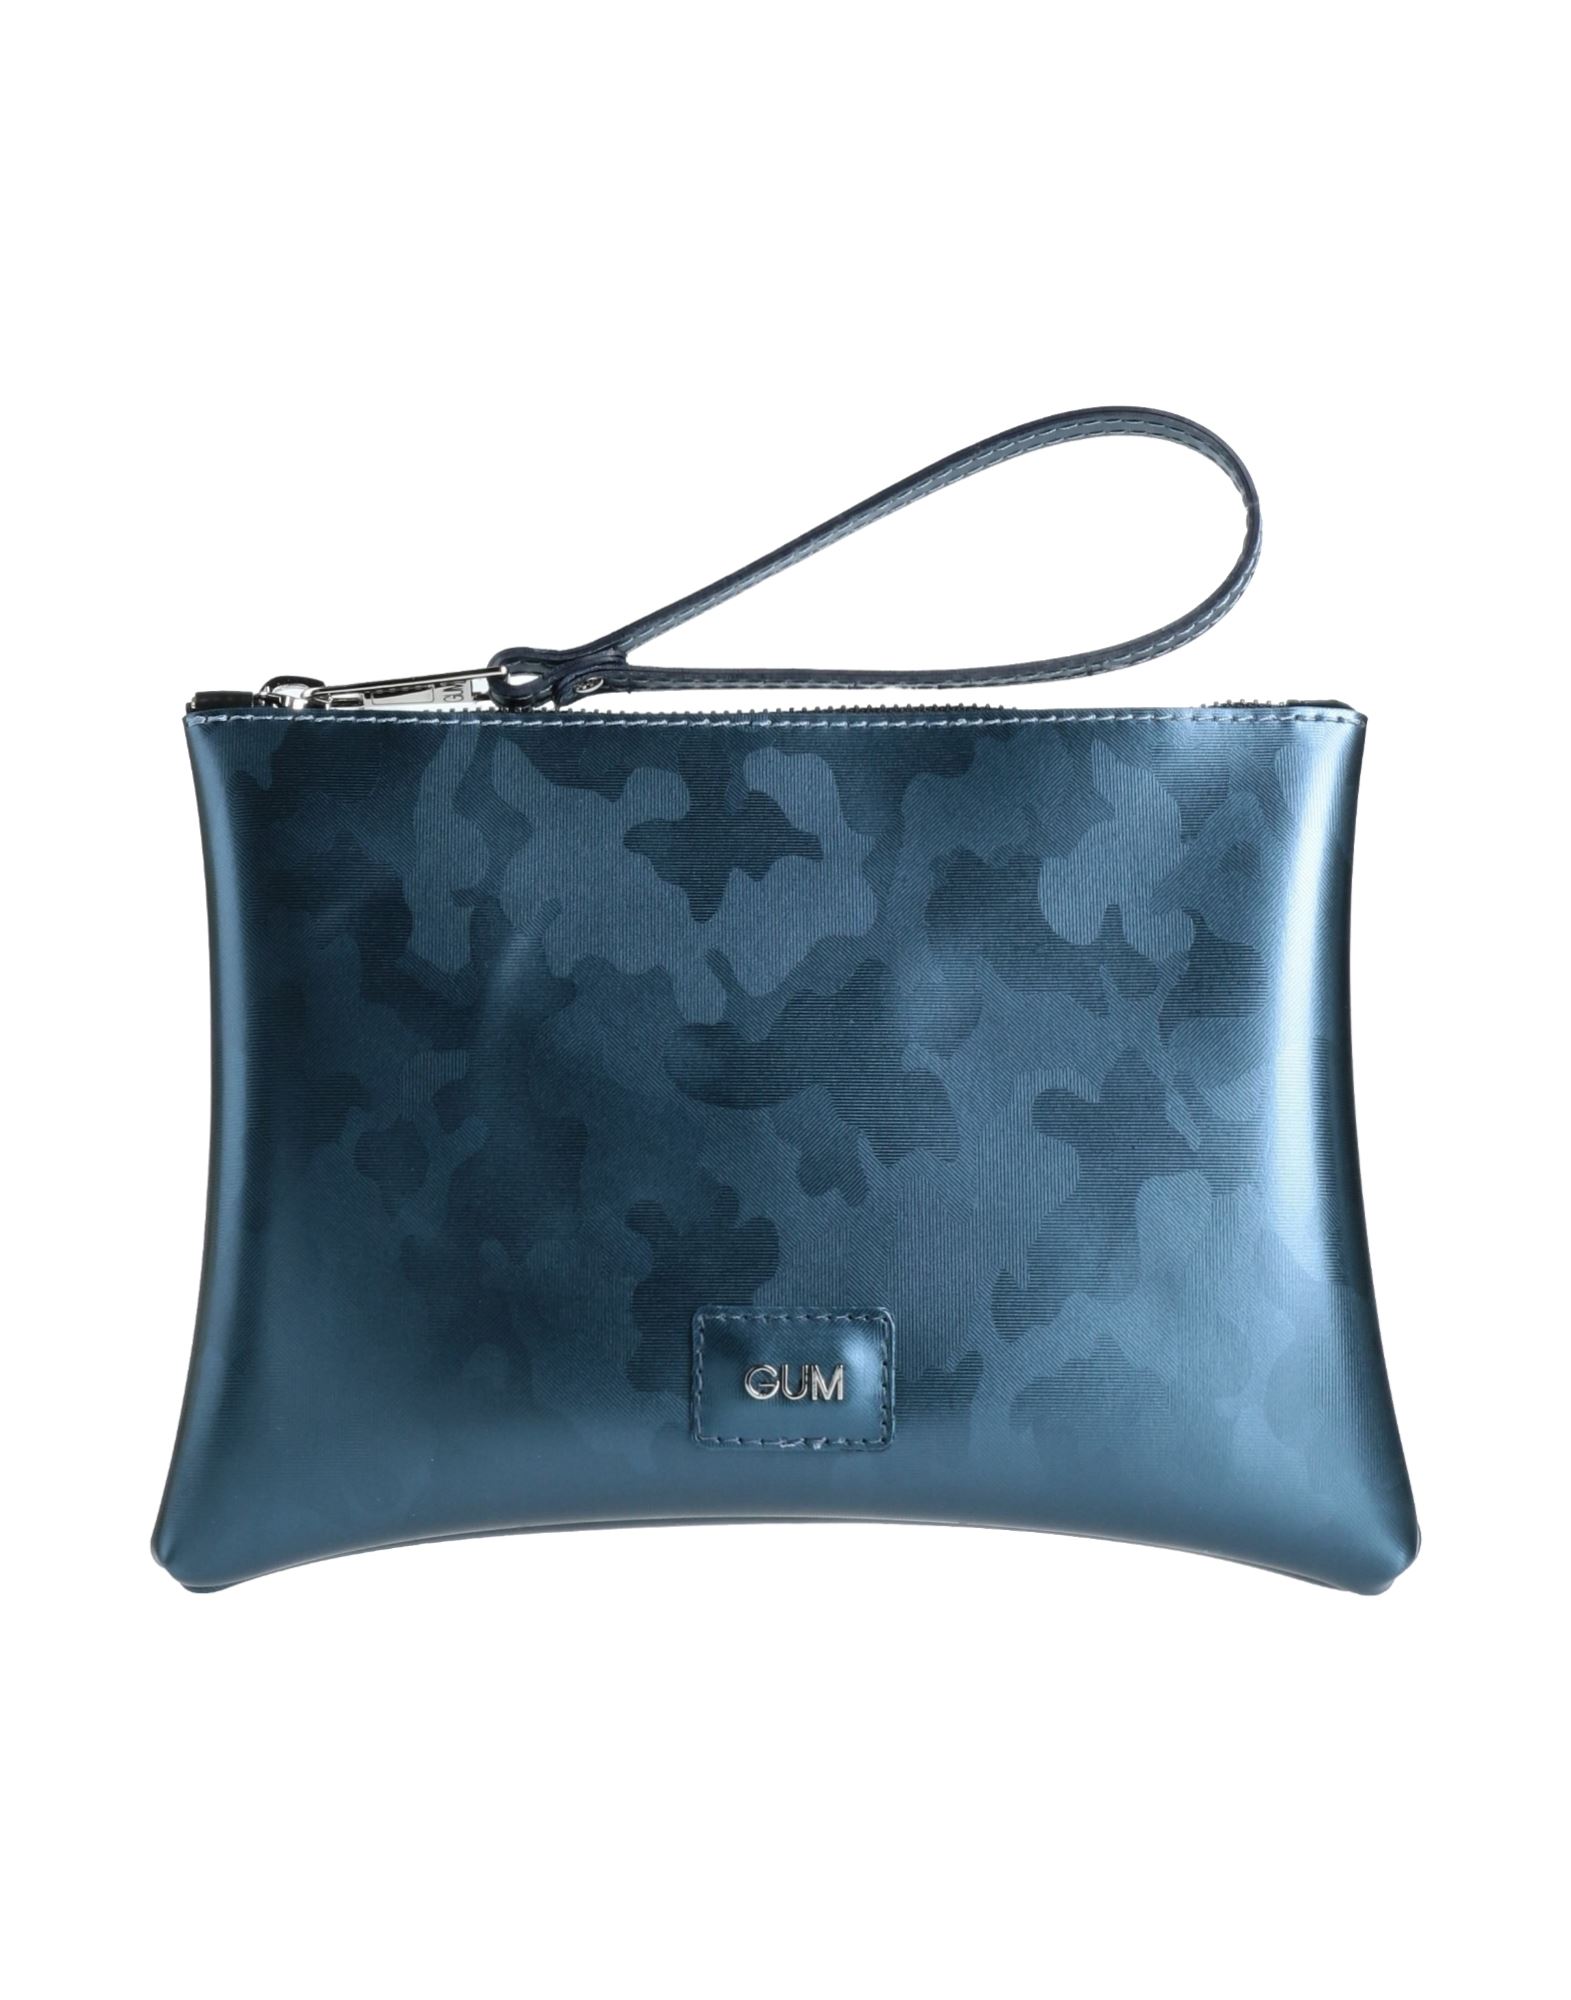 Gum Design Handbags In Slate Blue